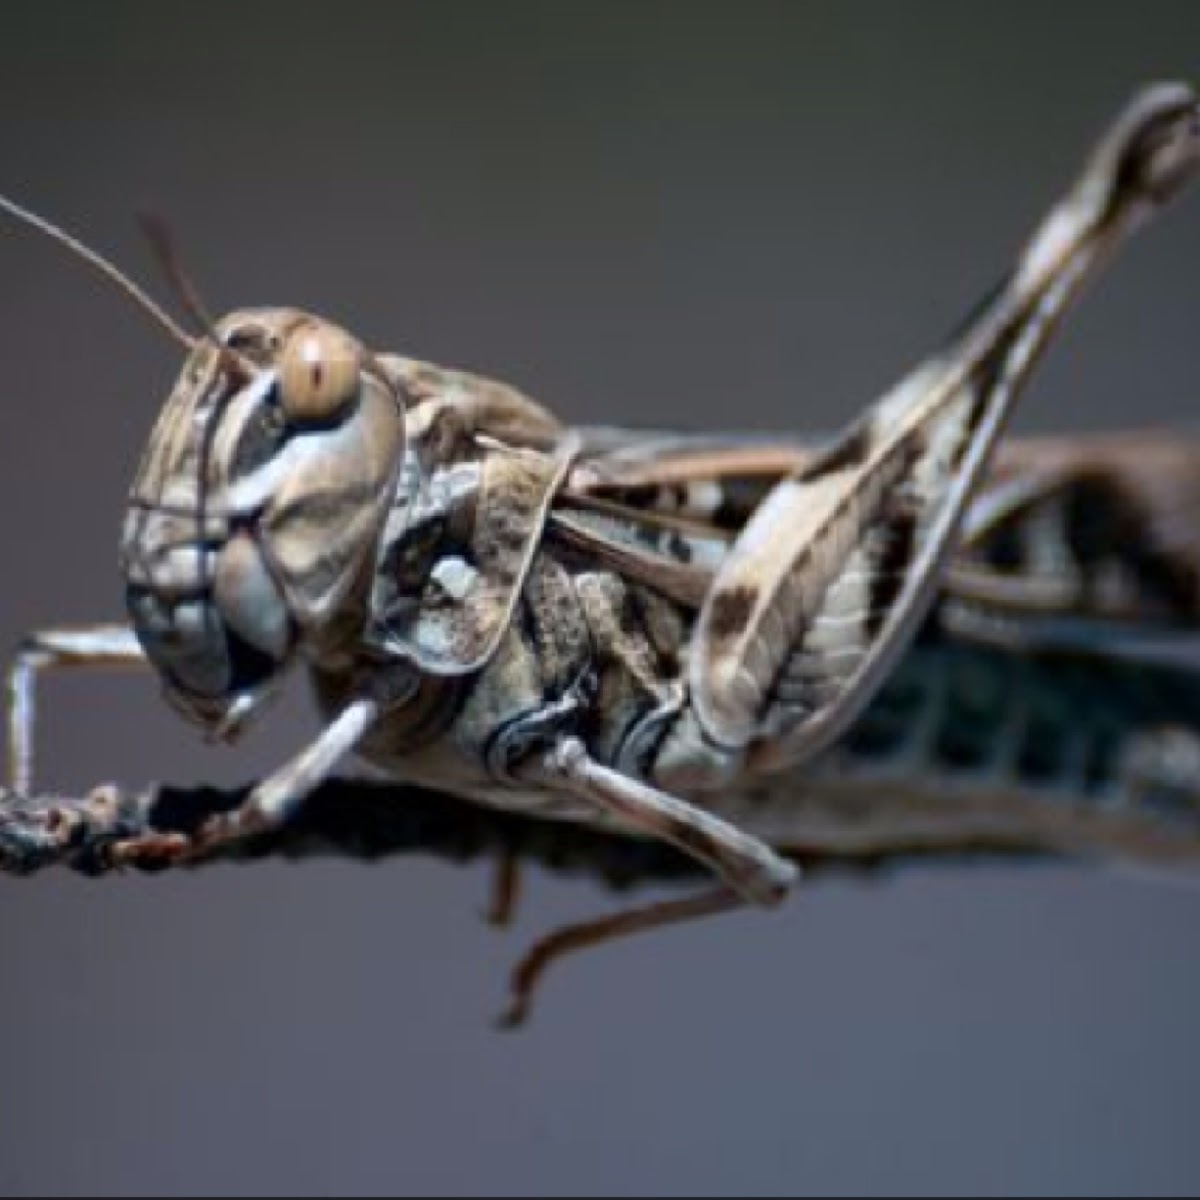 Italian locust